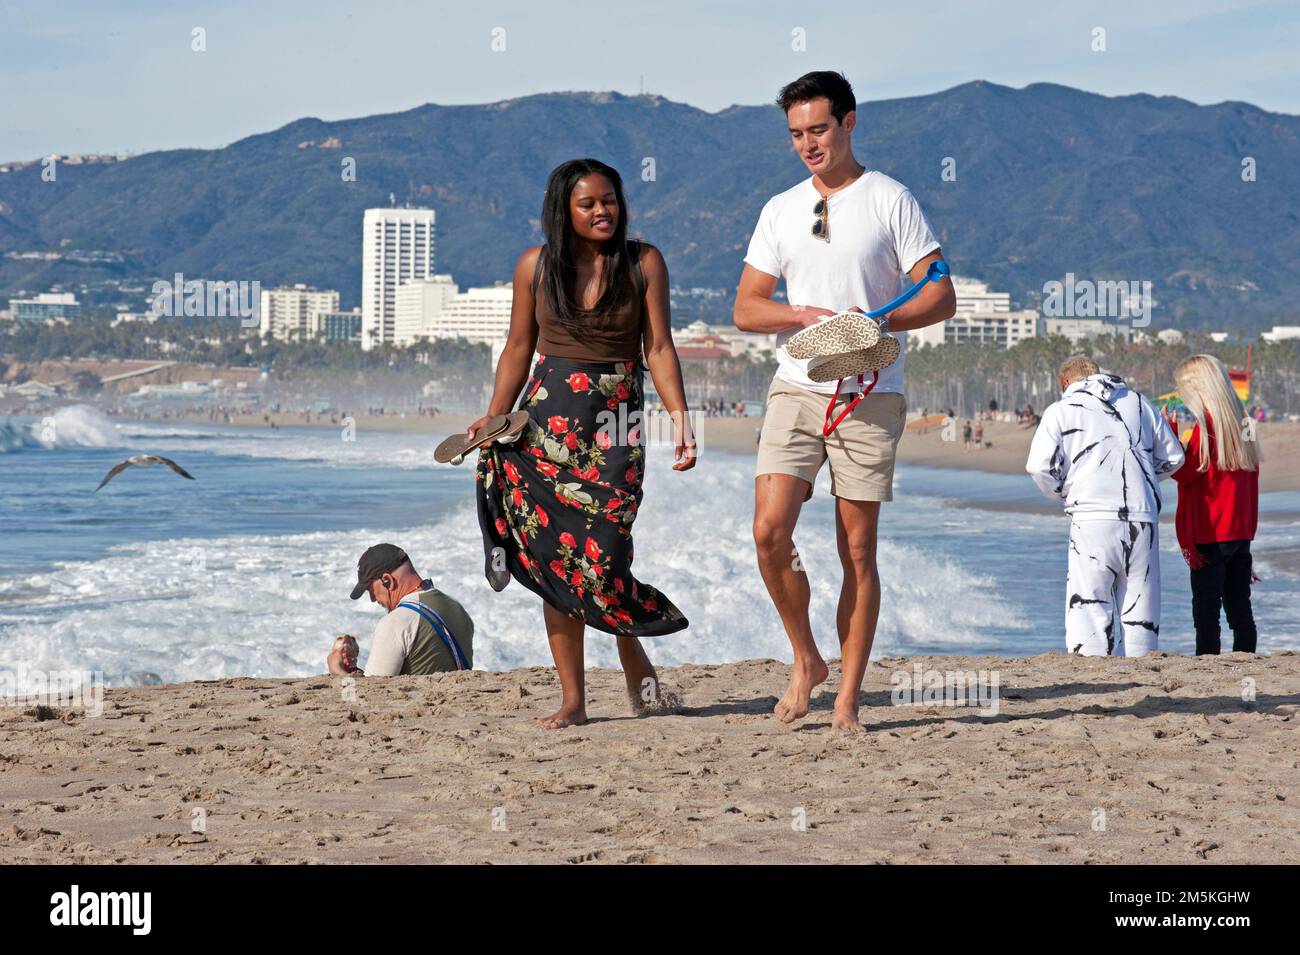 Le persone che si godono una passeggiata a Venice Beach con lo skyline di Santa Monica sullo sfondo. Foto Stock